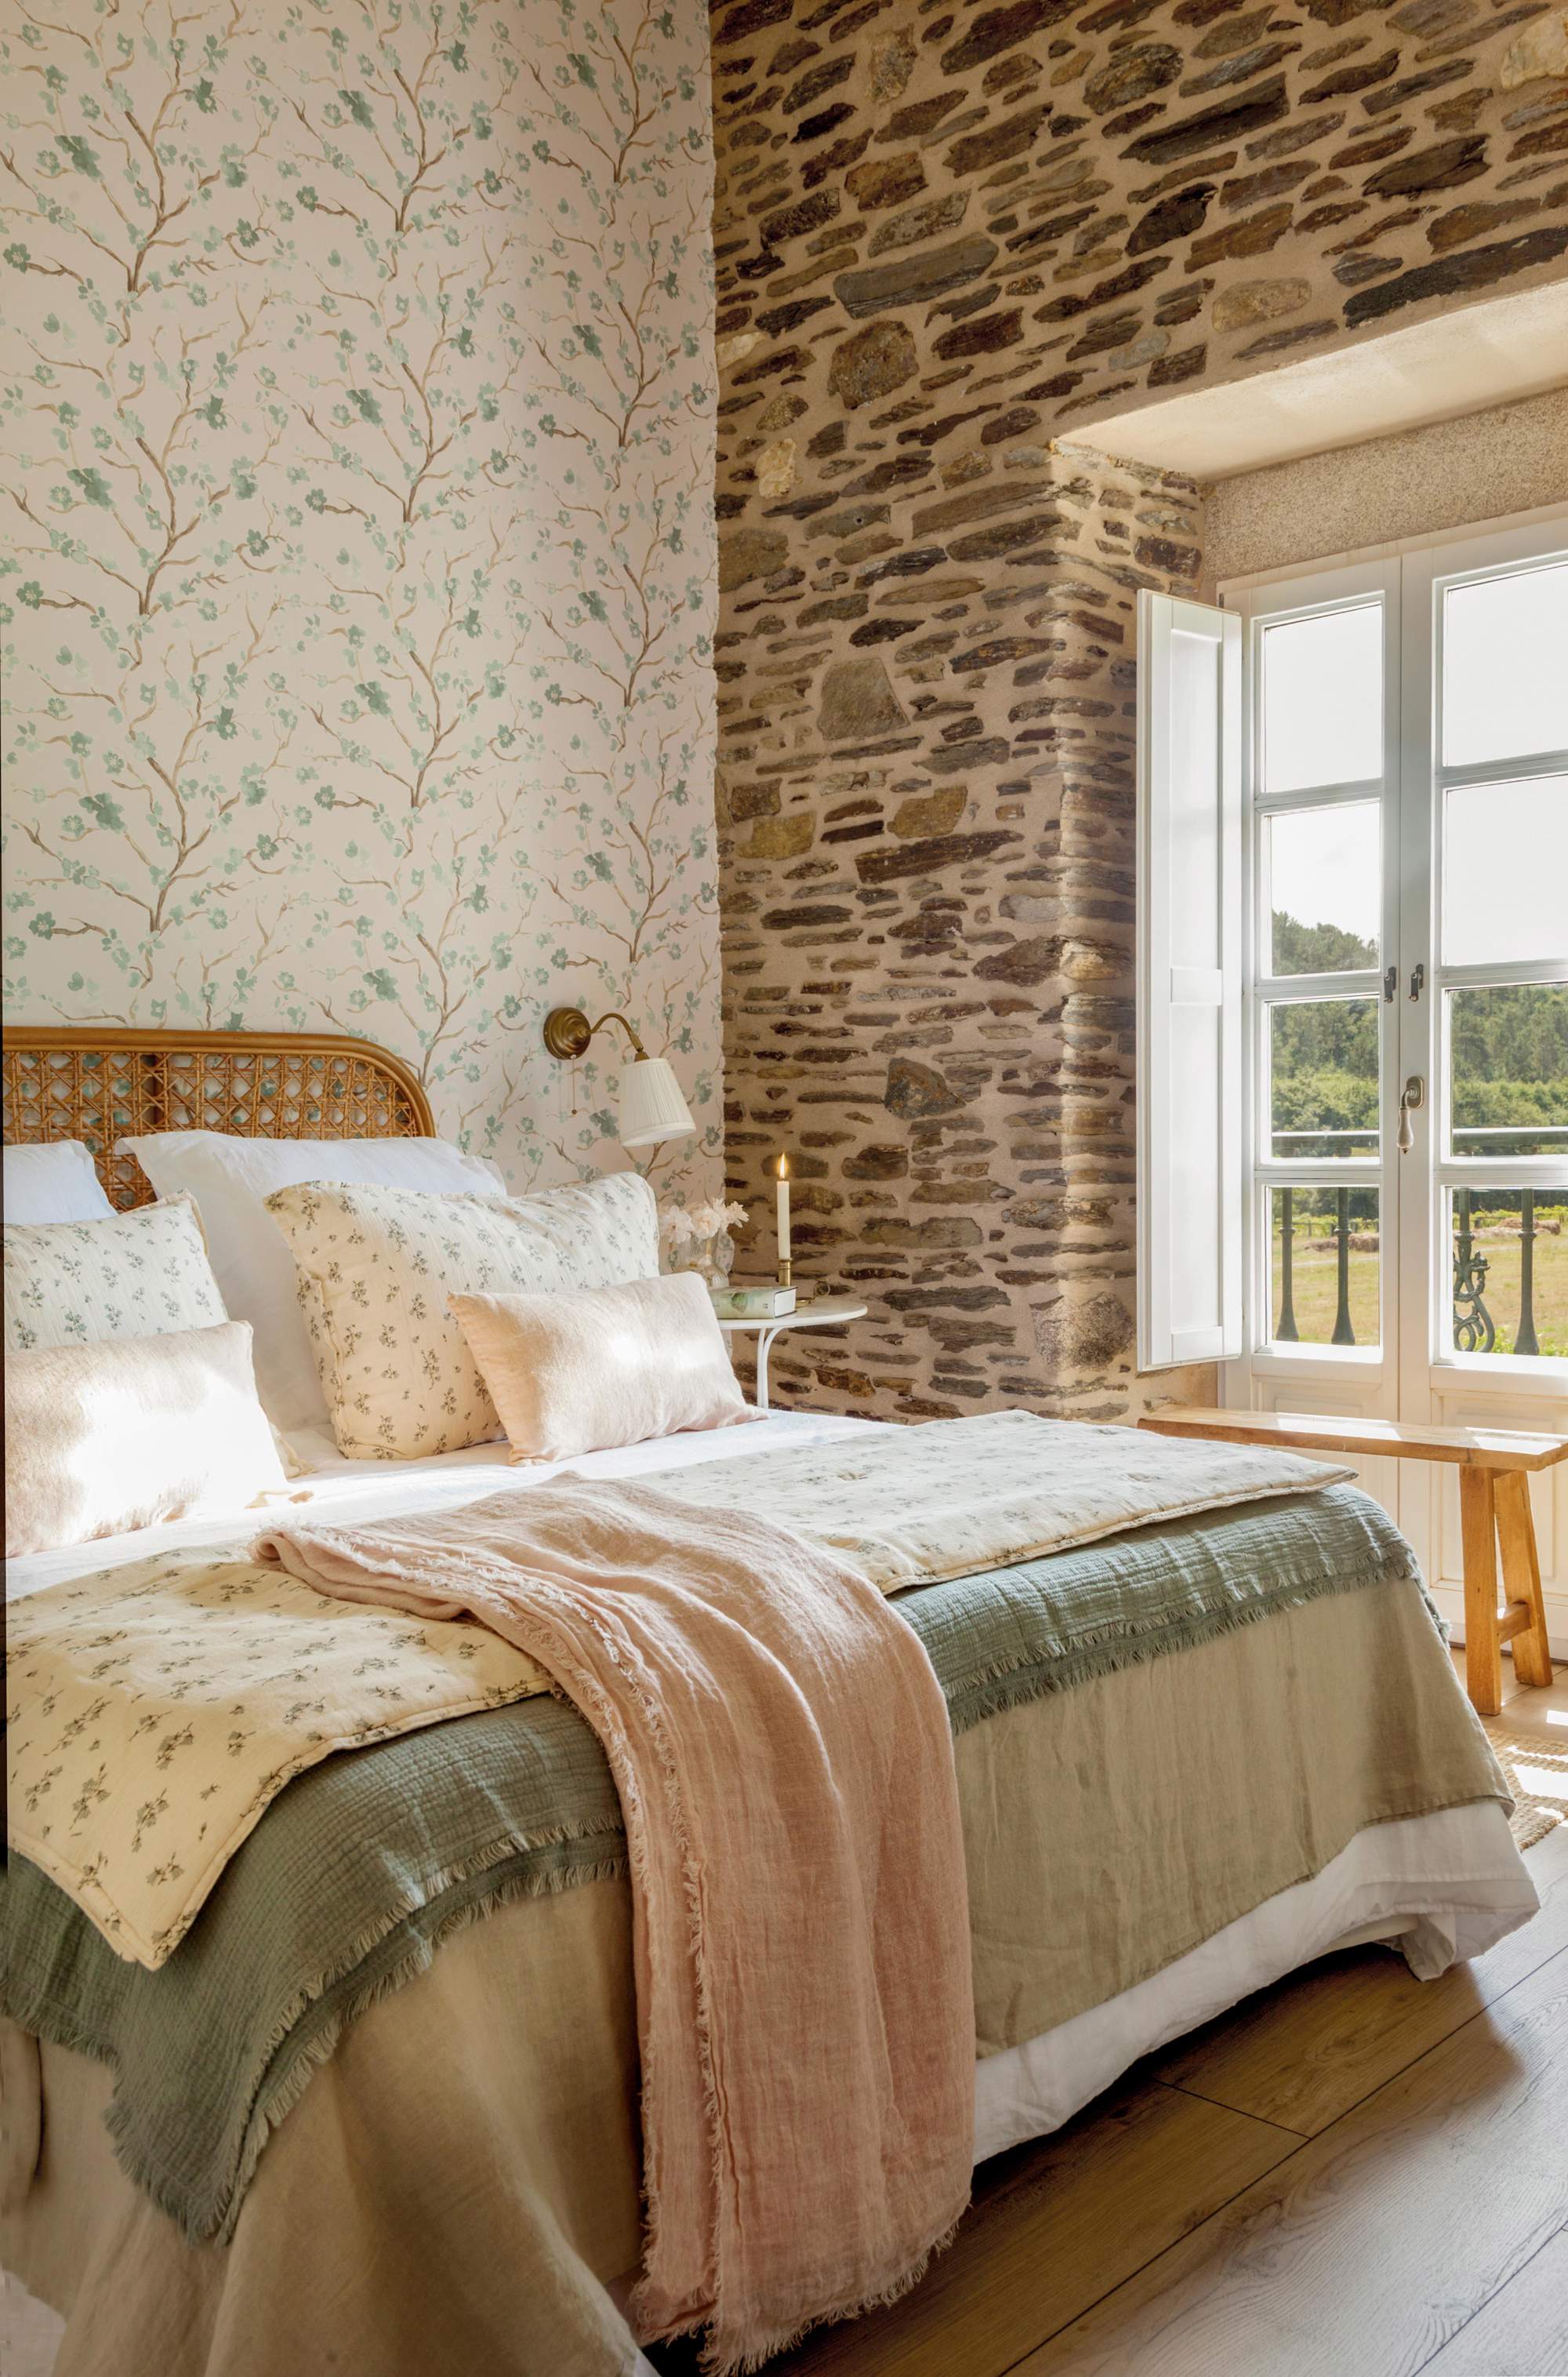 Dormitorio con cabecero de rejilla, revestimiento de piedra y papel pintado vegetal